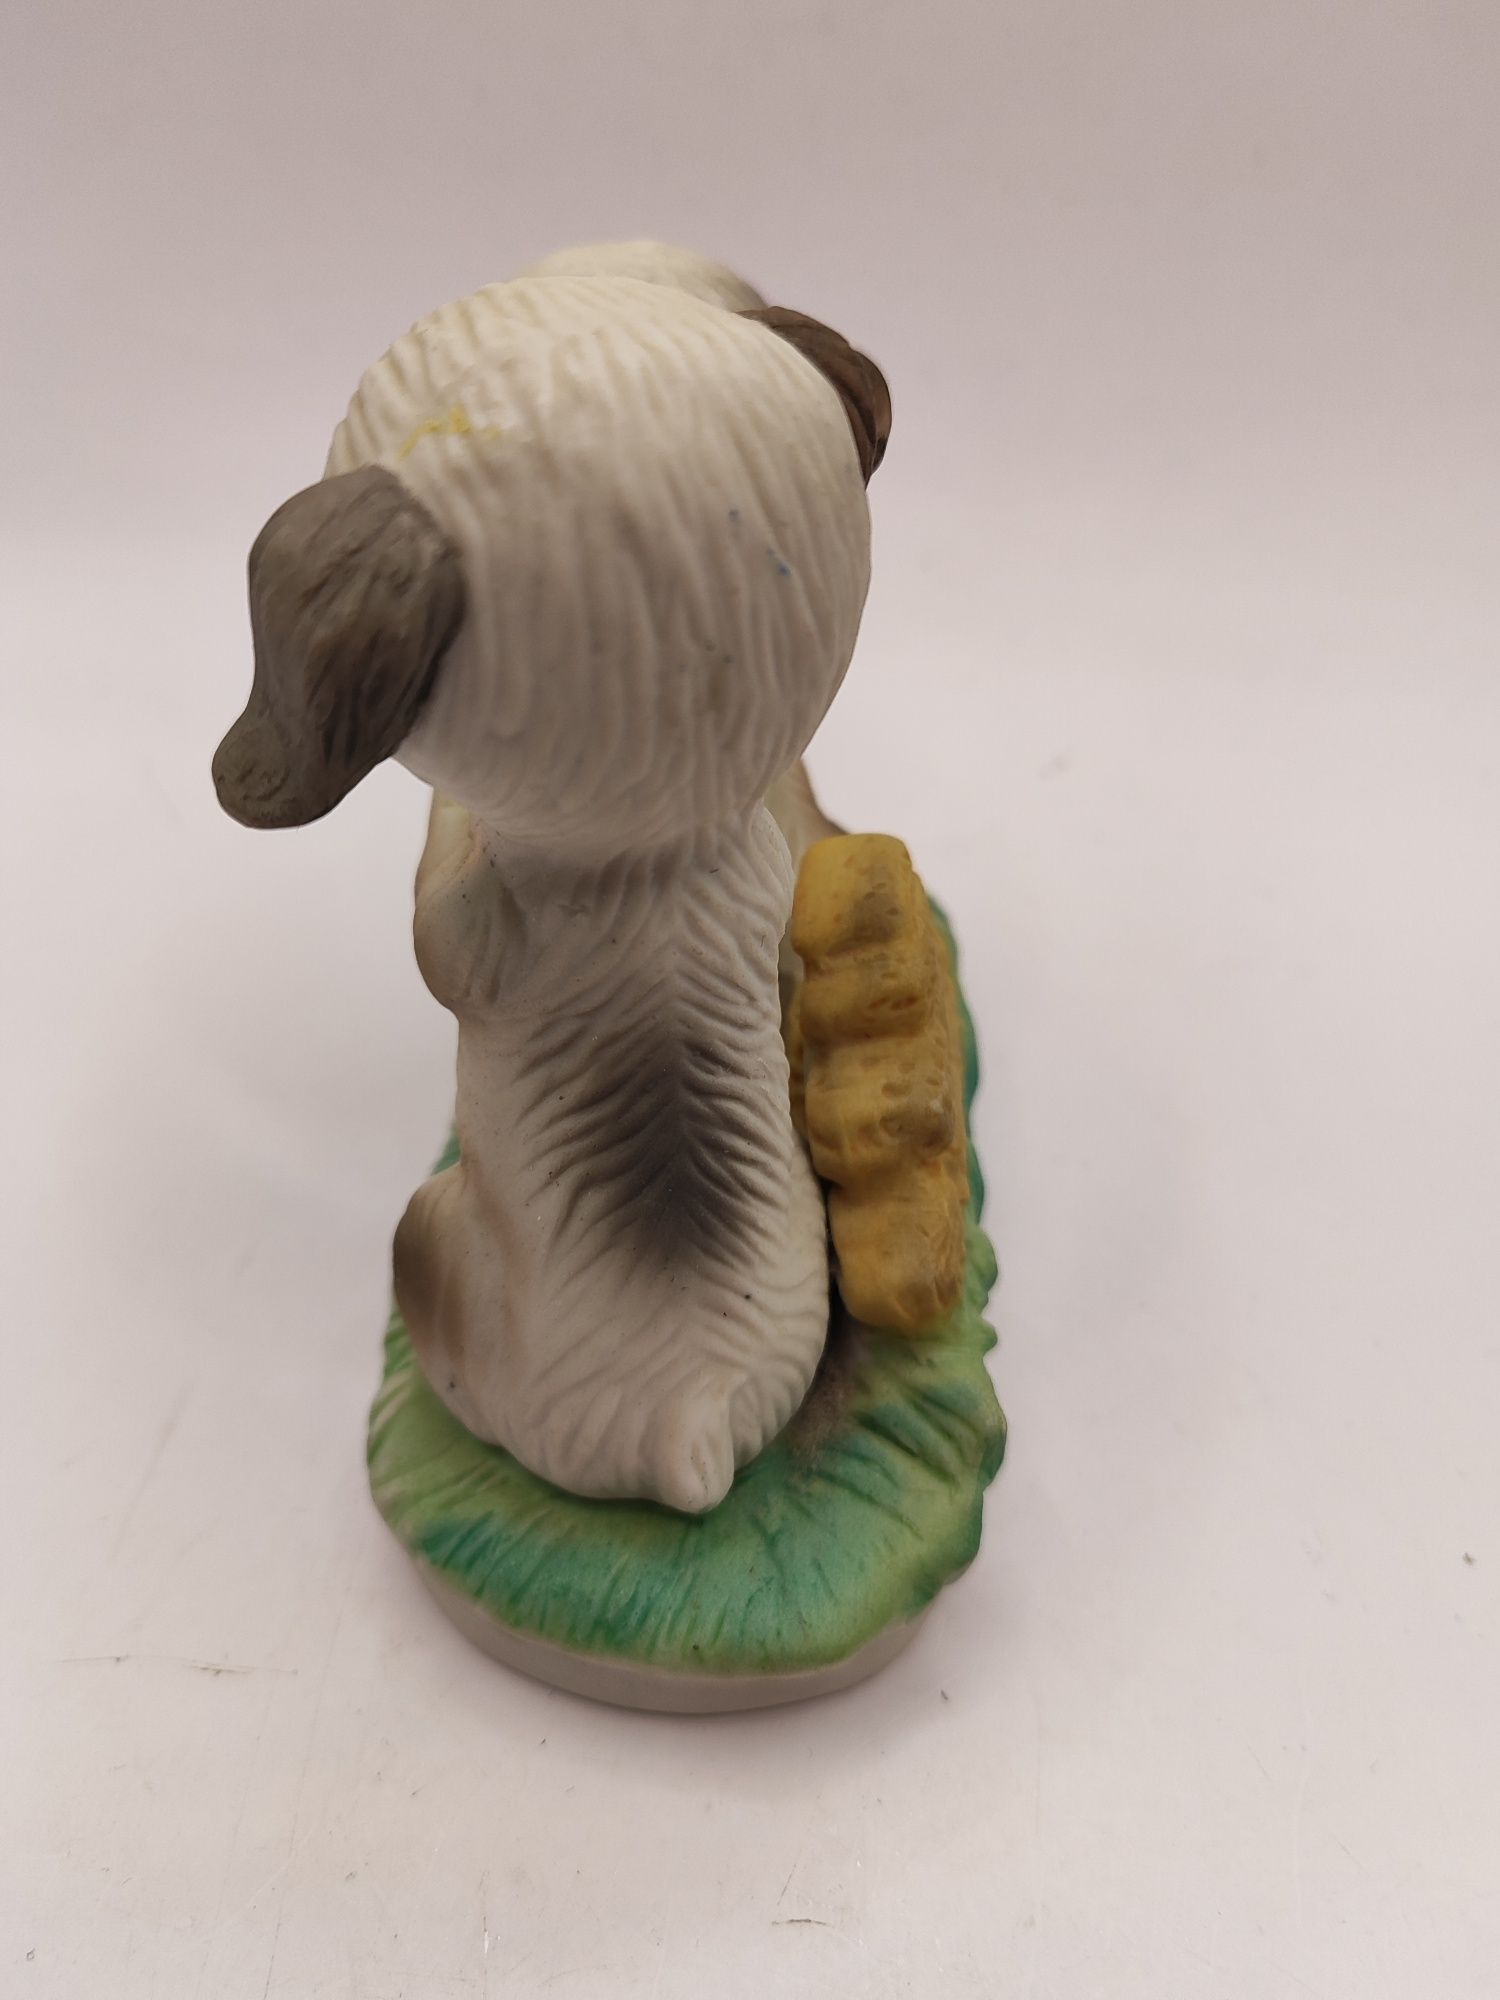 Ceramiczna figurka psy urocze pieski para